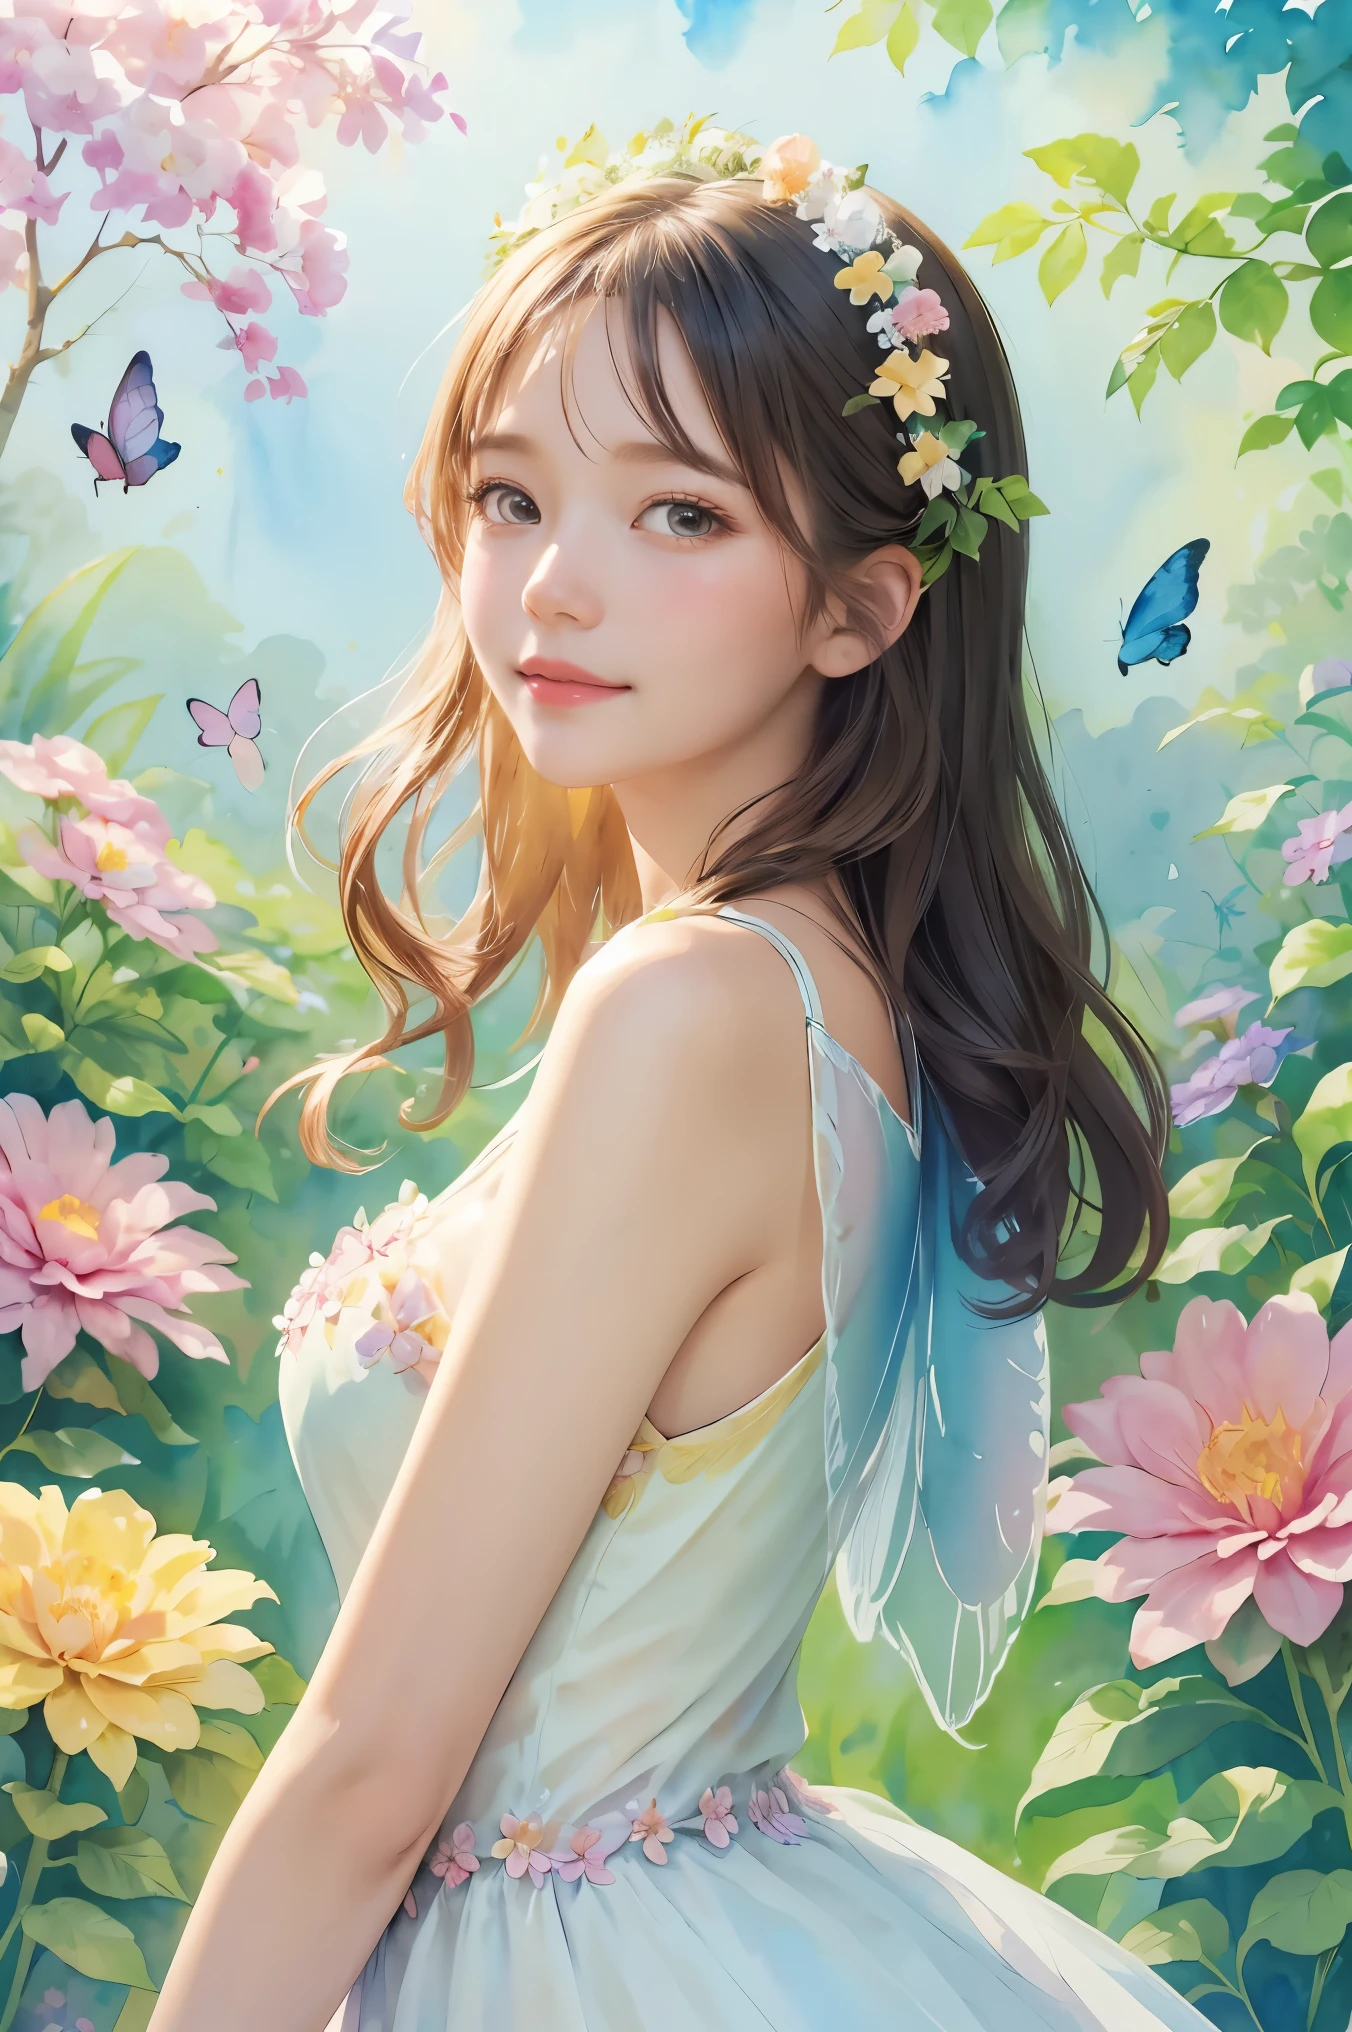 Uma linda garota fantasiada de fada, rodeado de flores e borboletas. Contente: Pintura aquarela. estilo: caprichoso e delicado, como uma ilustração de livro infantil.